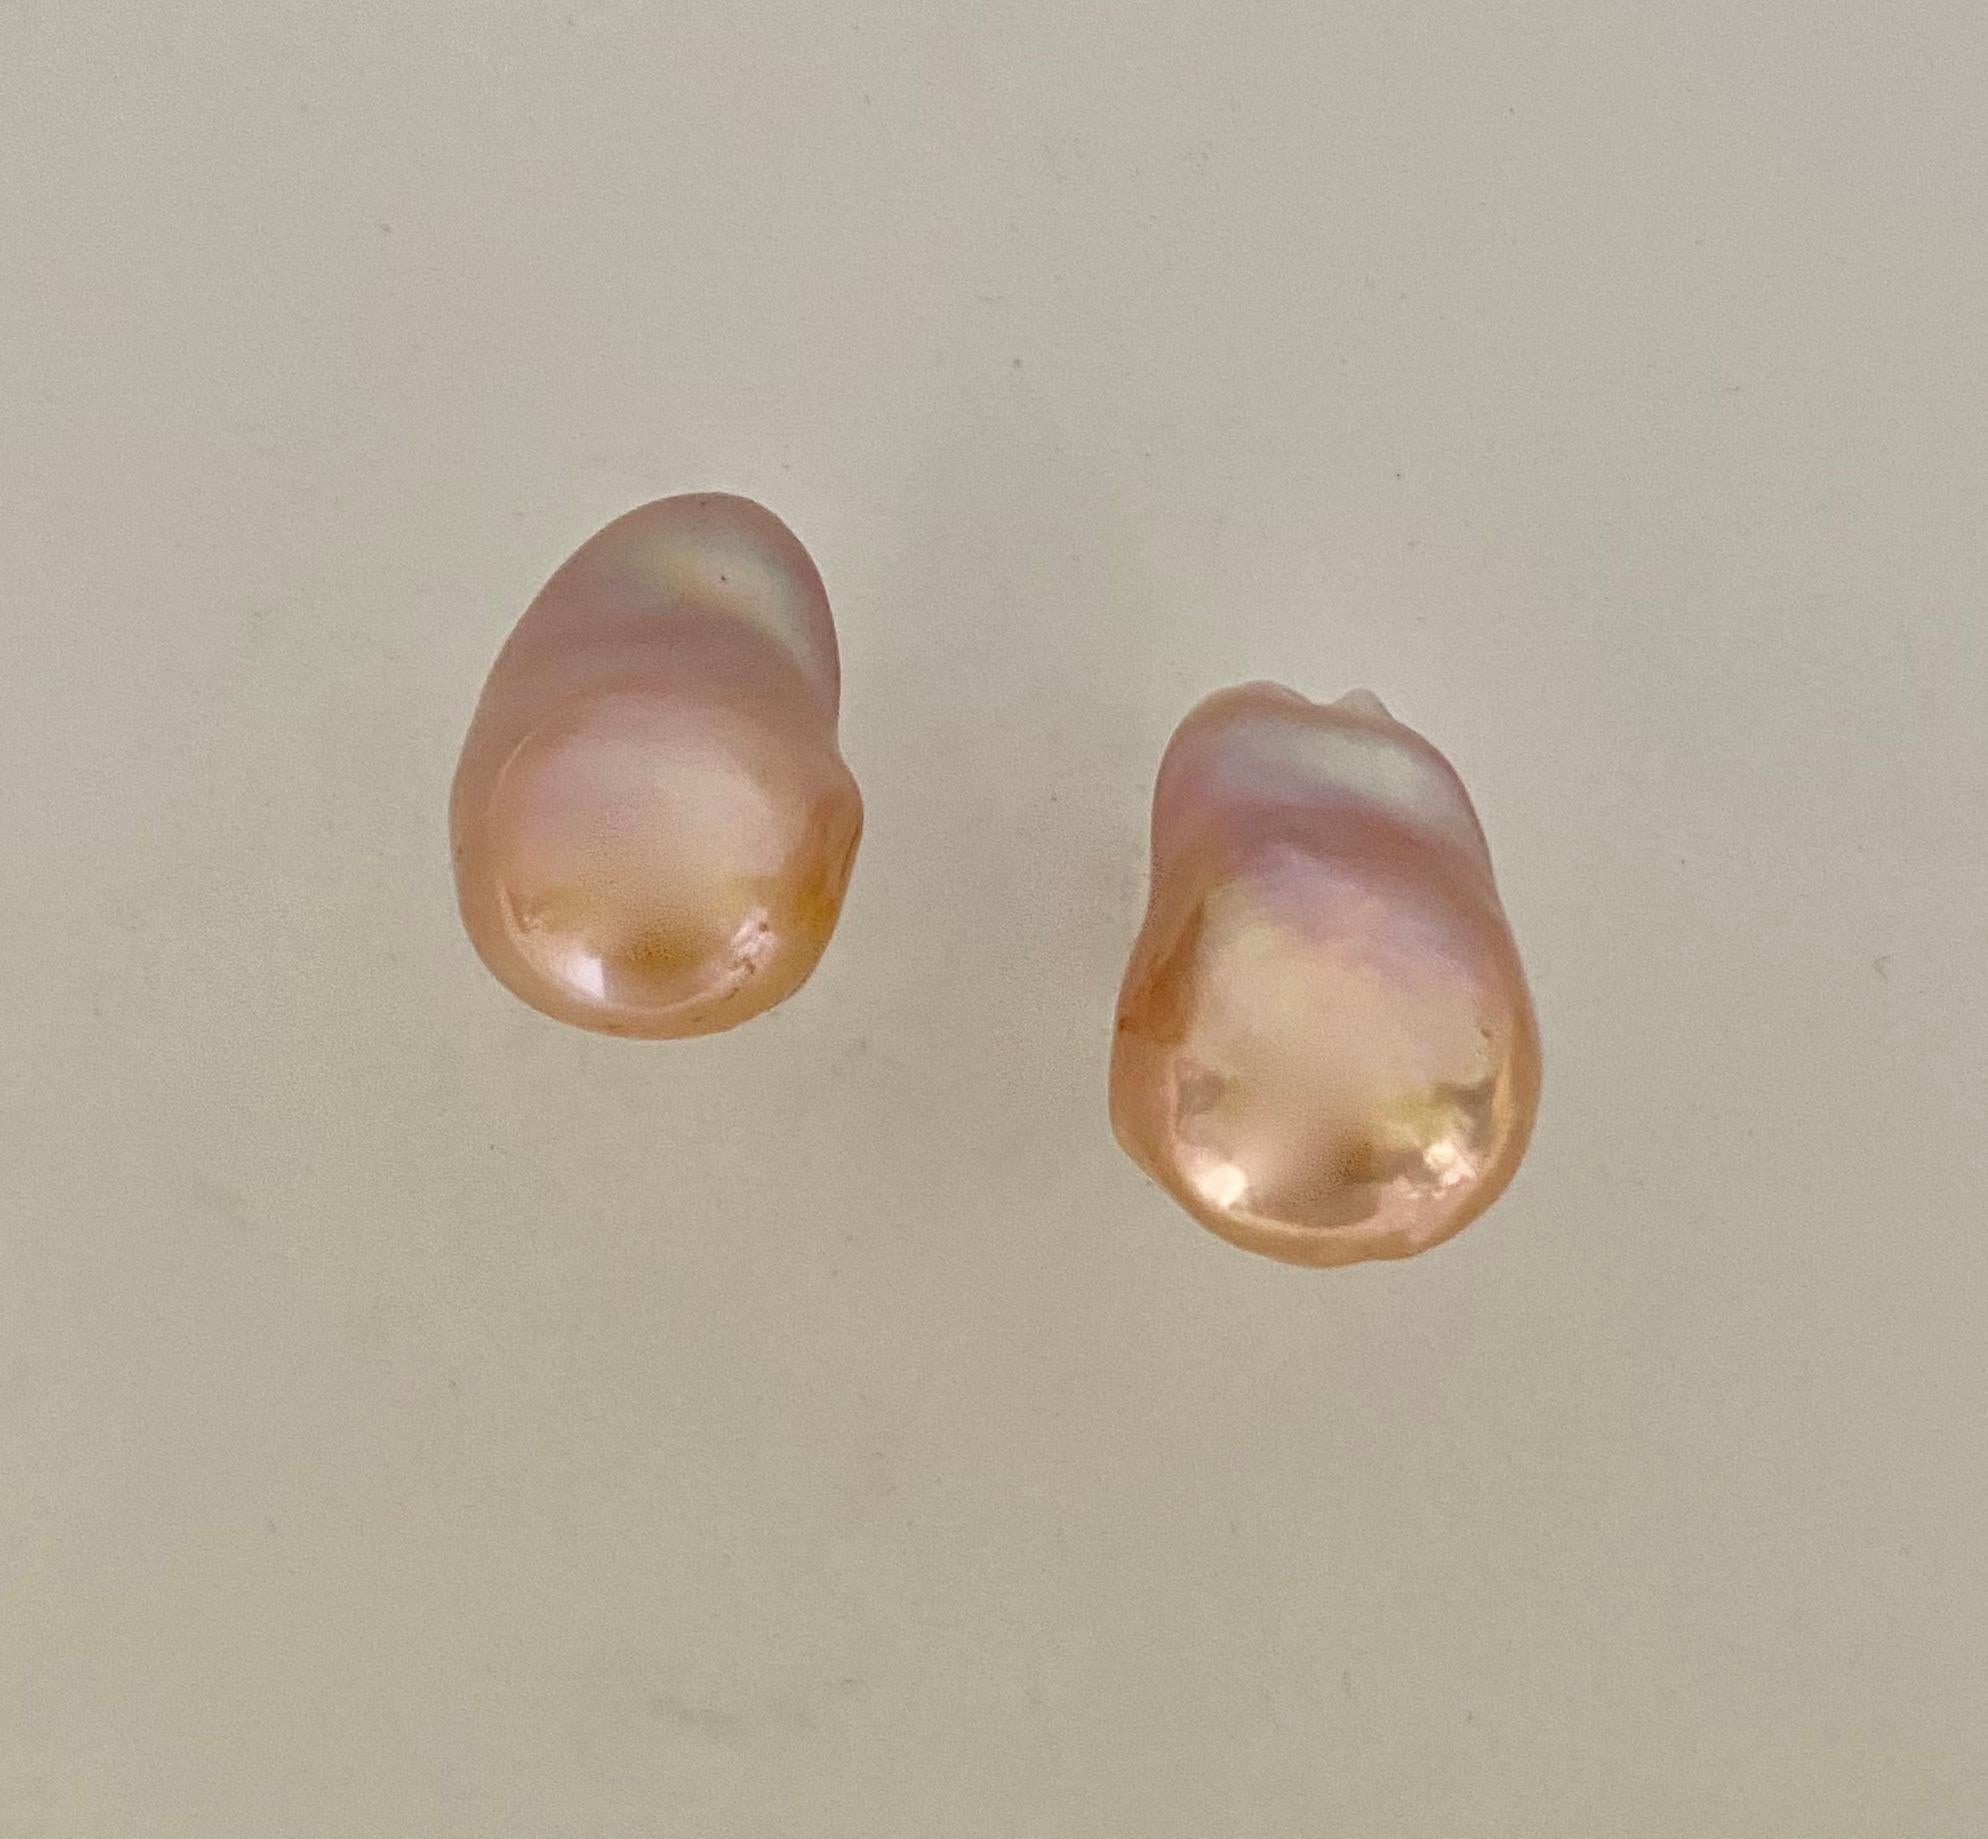 Barocke Perlen präsentieren sich in diesen klassischen und eleganten Ohrsteckern.  Die Süßwasserperlen (Herkunft: China) haben eine satte pfirsichfarbene/rosa Farbe.  Sie besitzen den reichen Glanz, für den Süßwasserperlen bekannt sind.  Die barocke